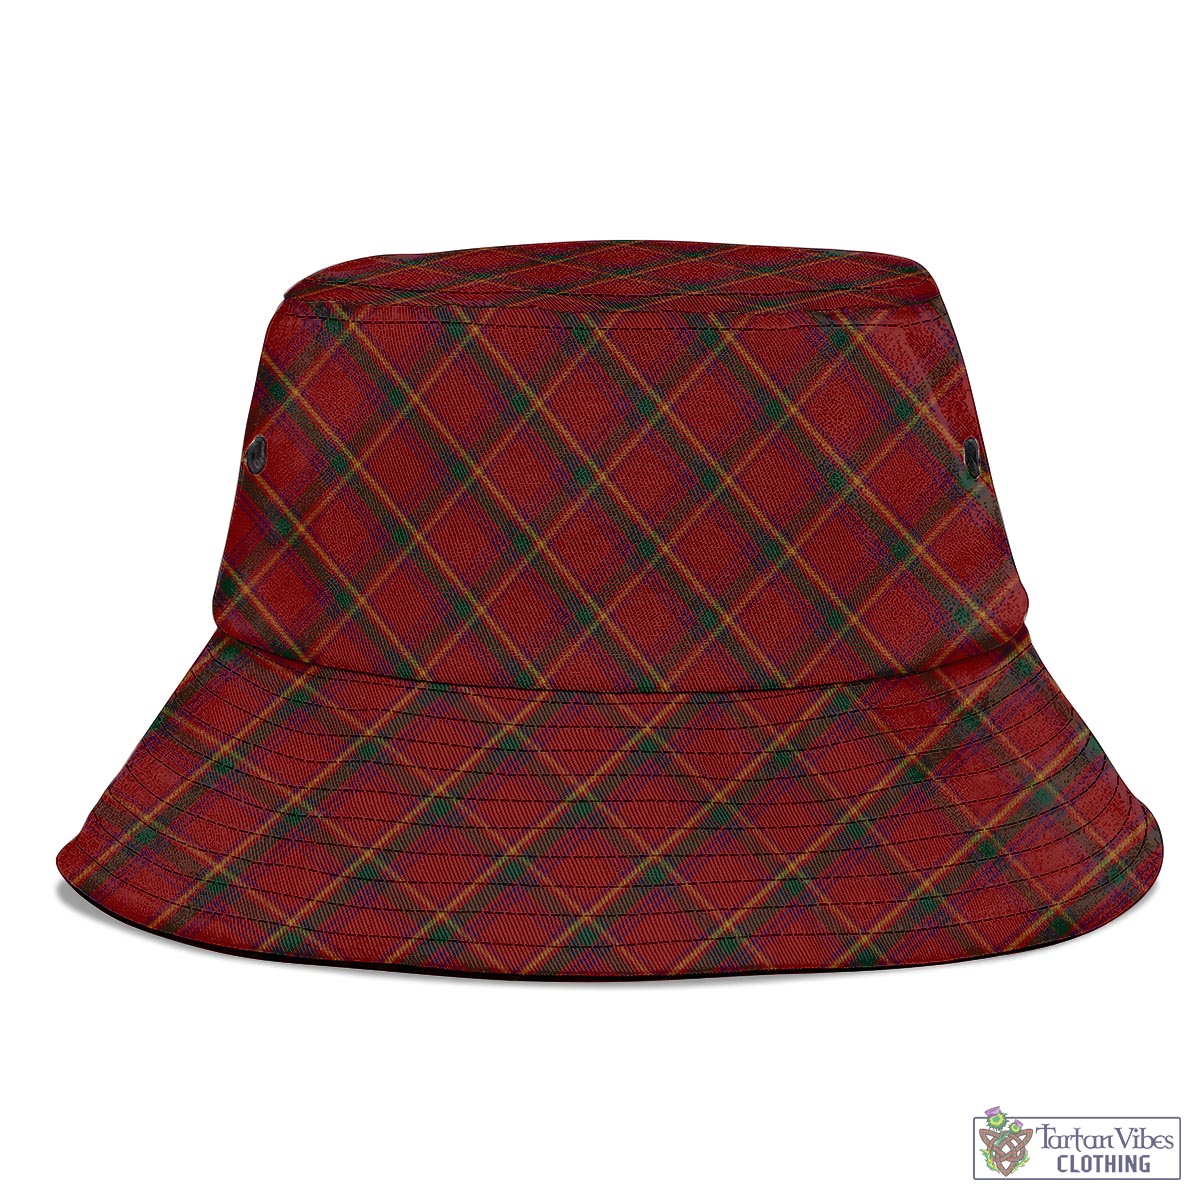 Tartan Vibes Clothing Galway County Ireland Tartan Bucket Hat